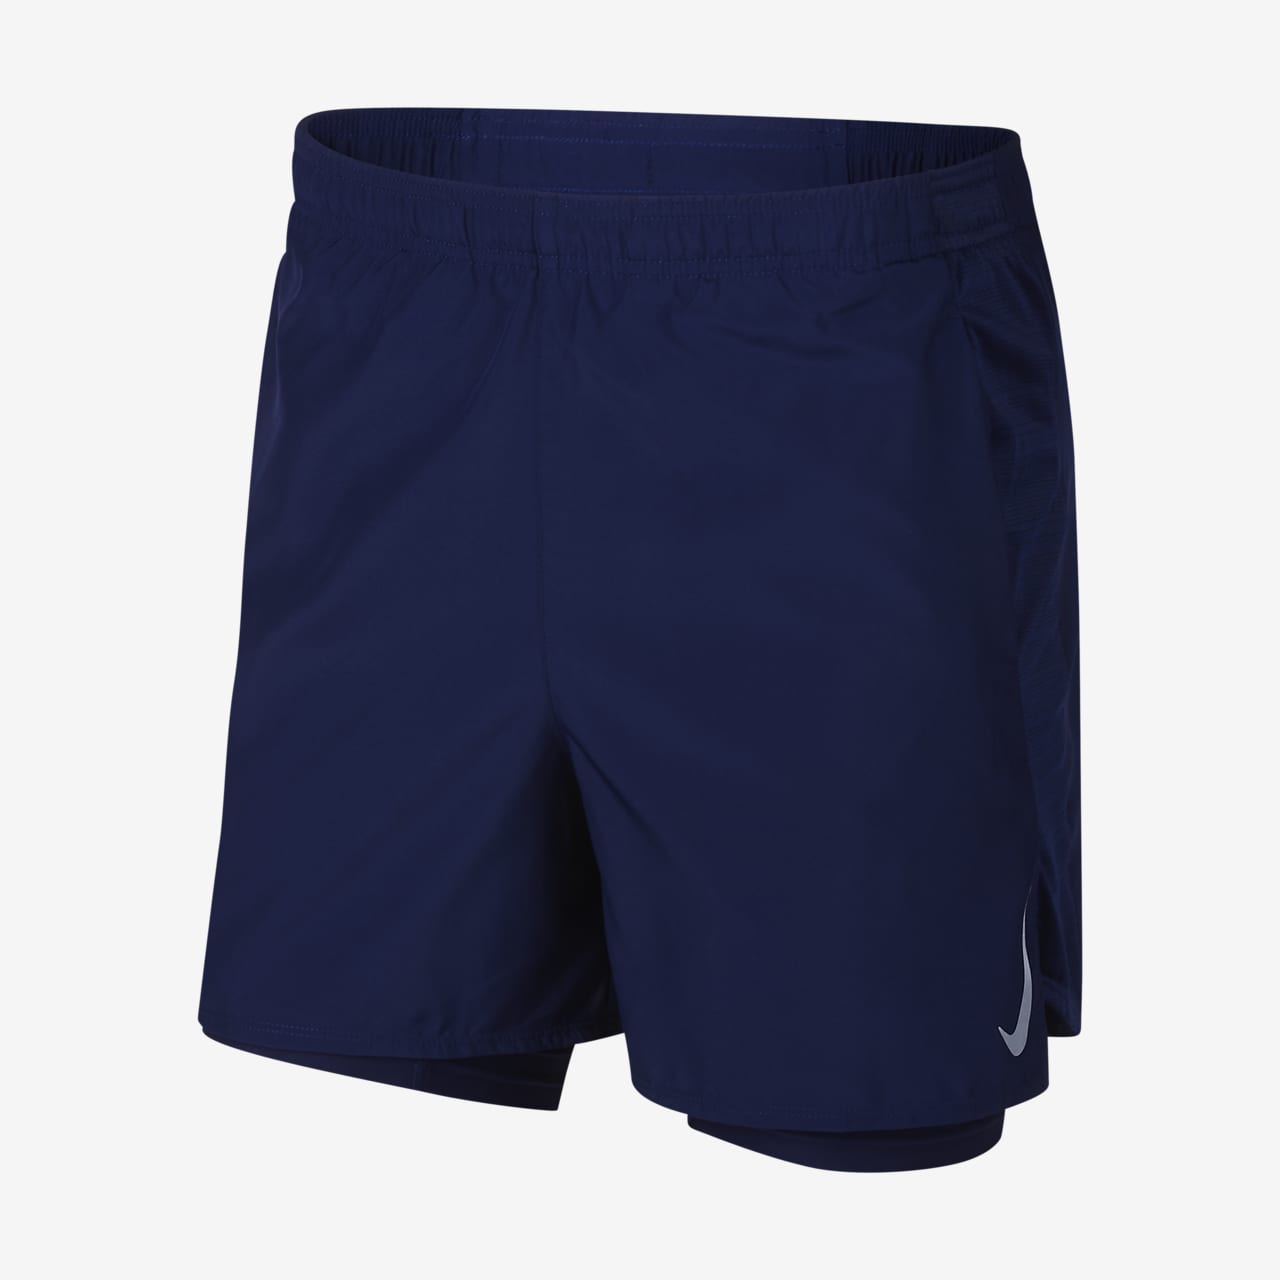 nike 2 running shorts